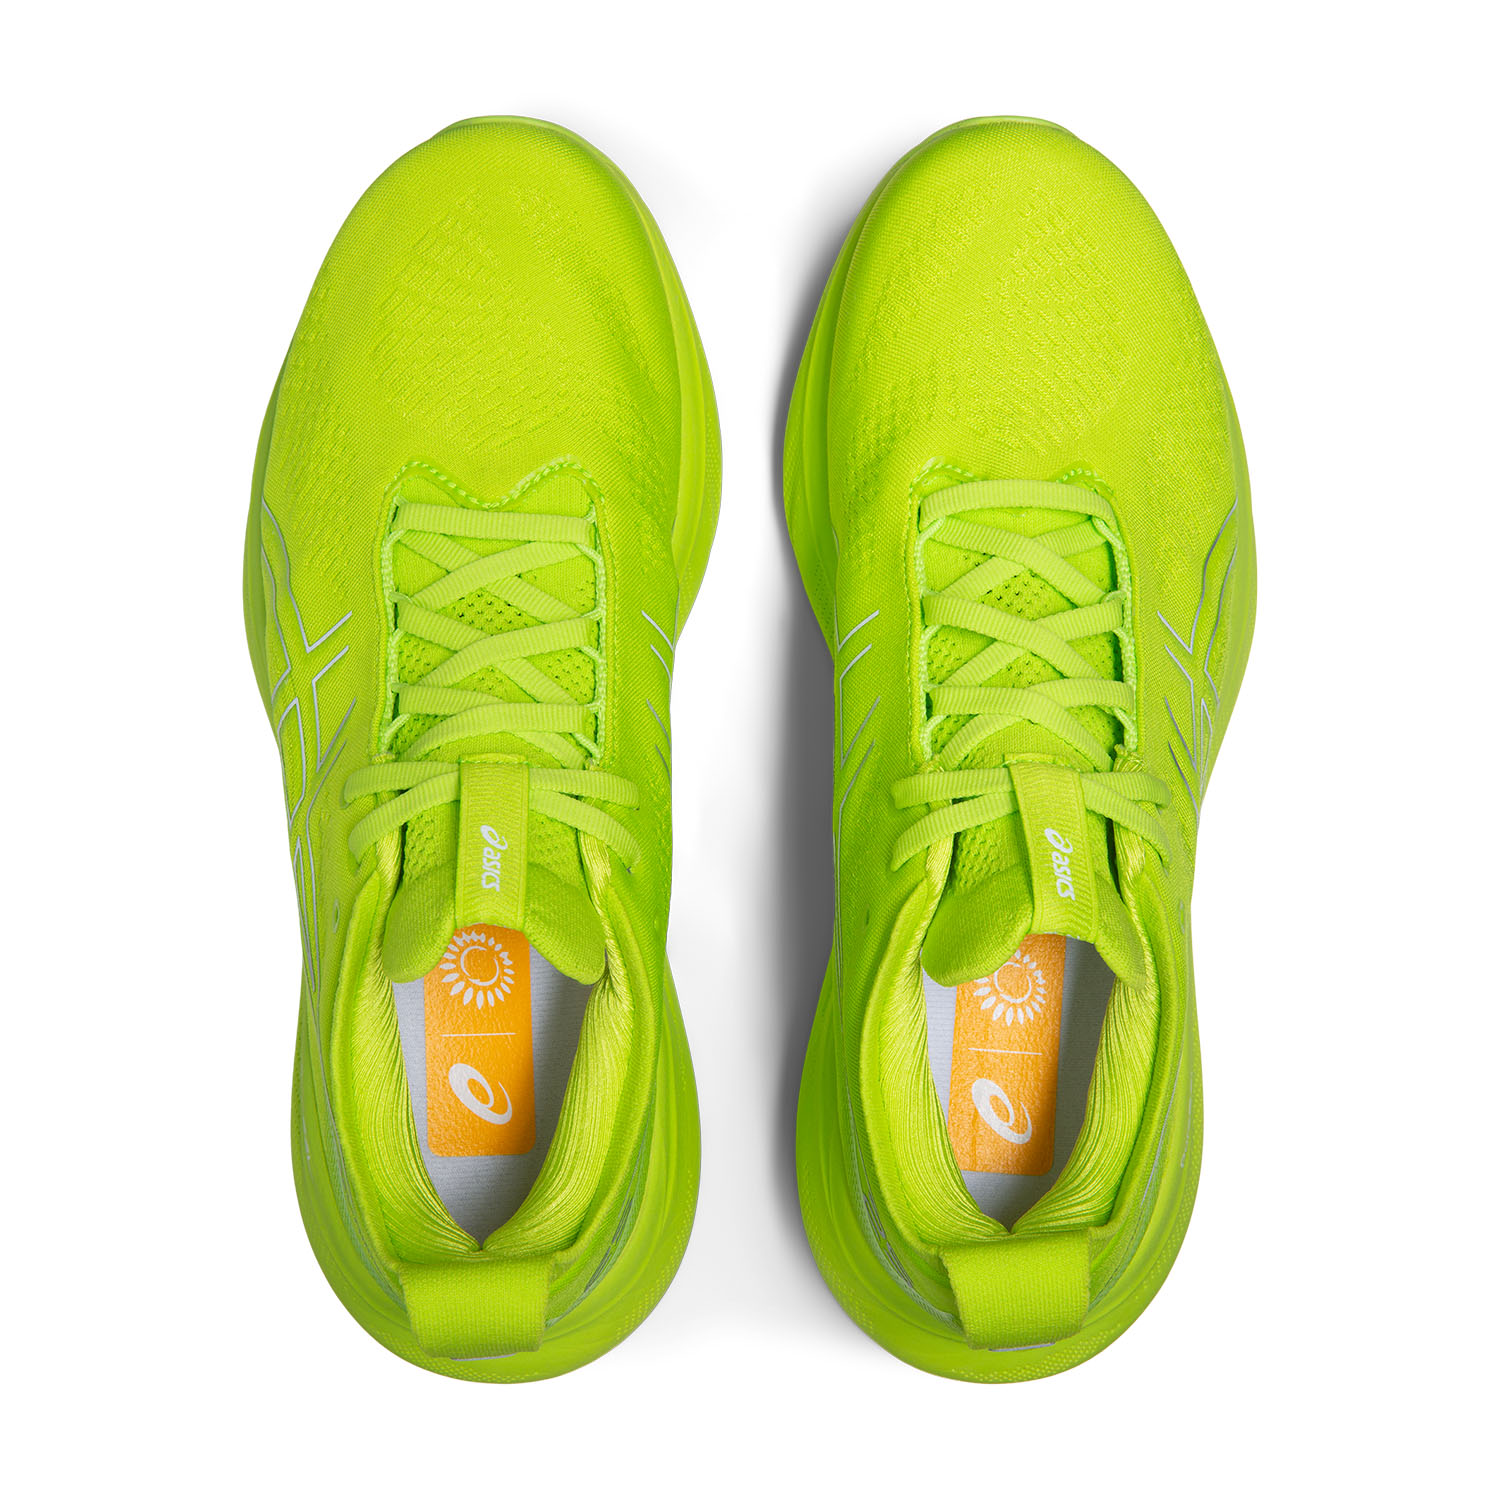 Asics Gel Nimbus 25 Men's Running Shoes - Lime Zest/White